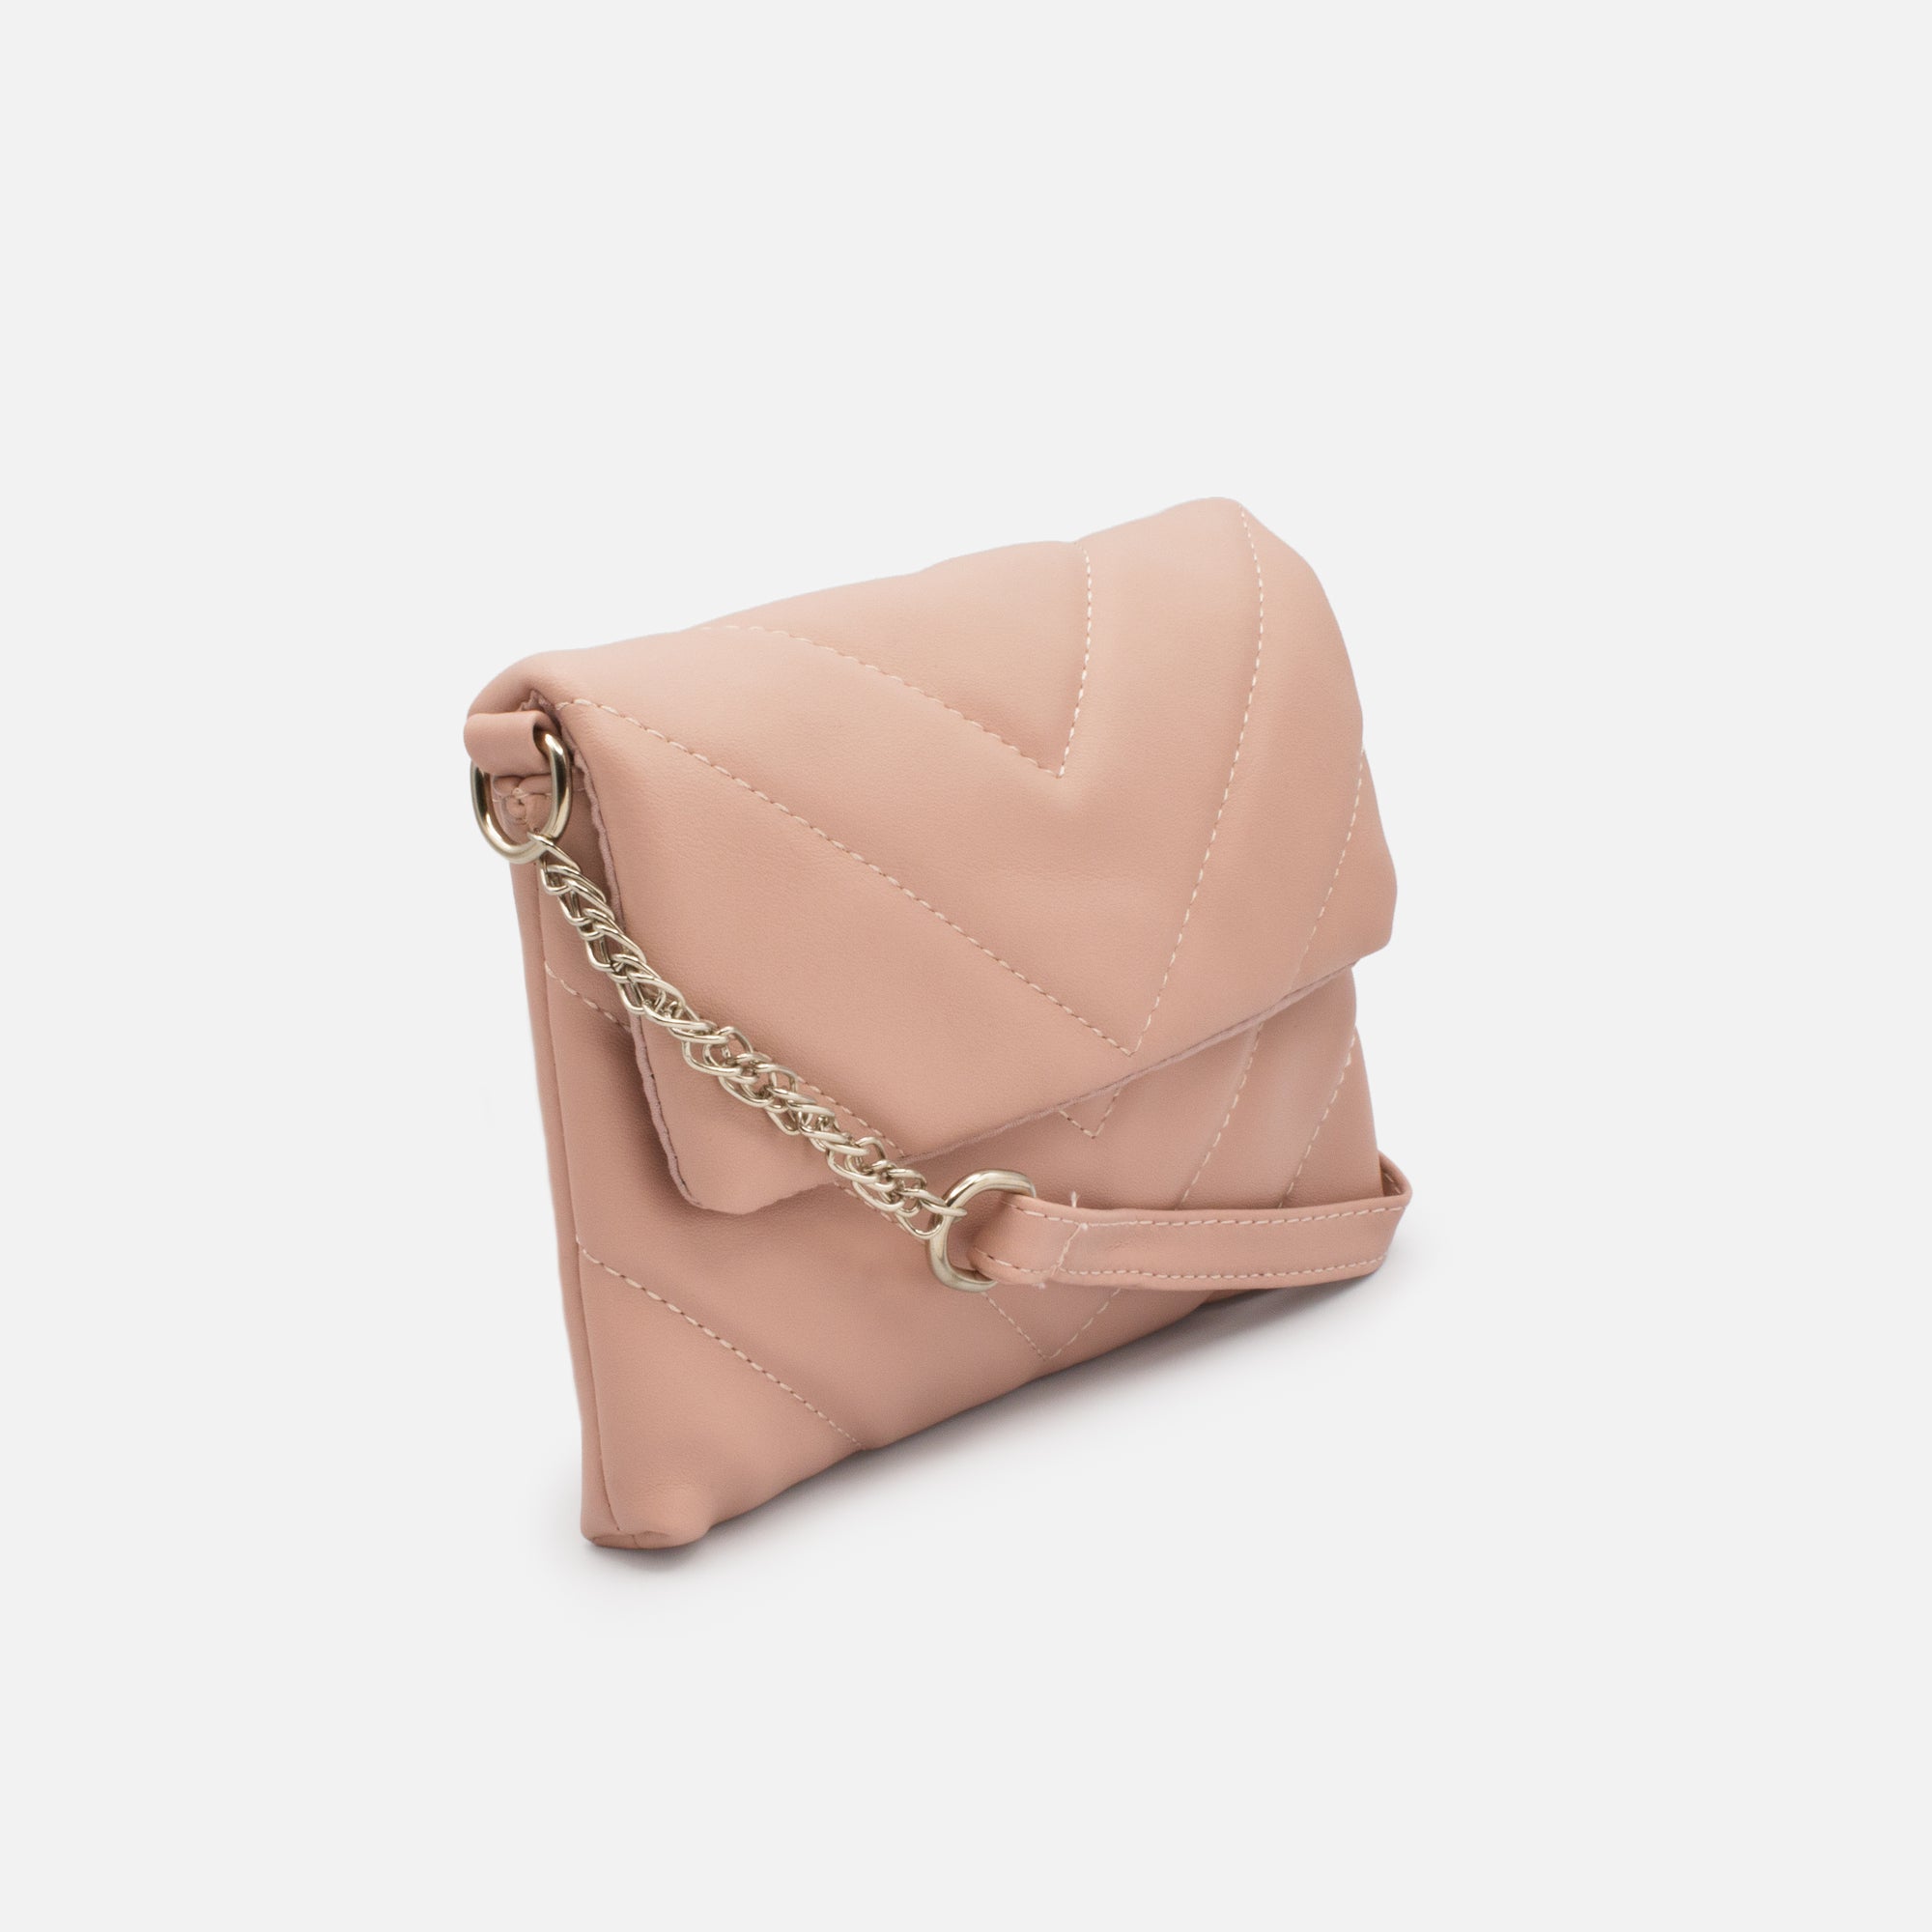 Quilted handbag with old pink shoulder strap